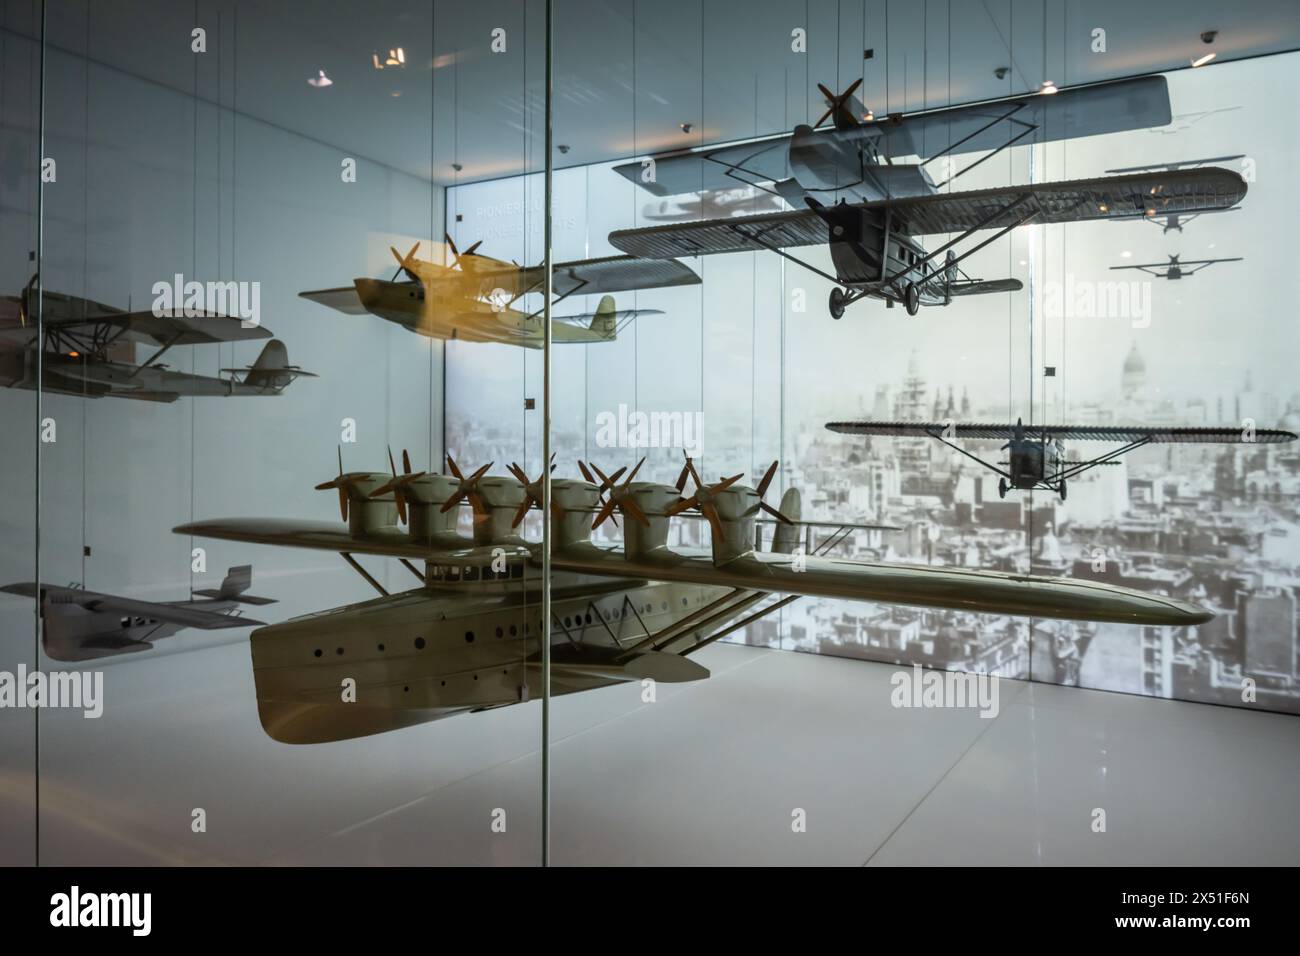 Exposition de modèles d'hydravions, Musée Dornier, Friedrichshafen, Allemagne Banque D'Images